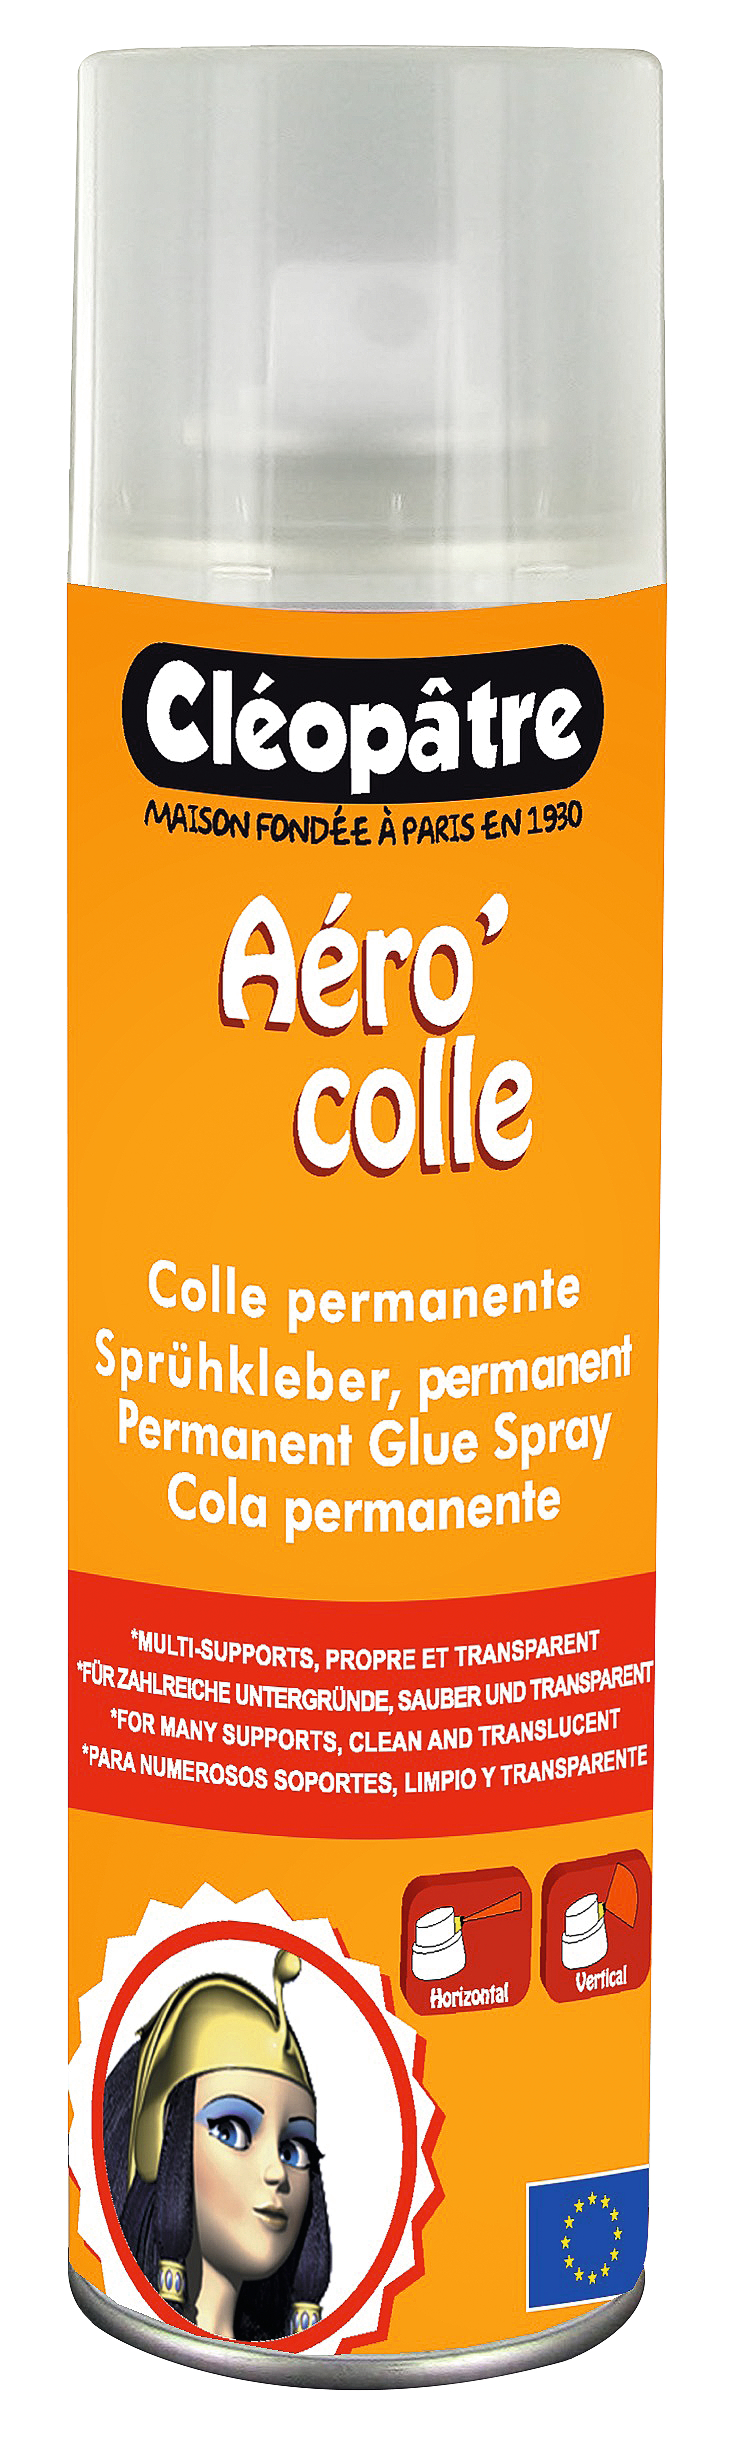 Cléopâtre Colle en Spray repositionnable pour Textile et Tissus